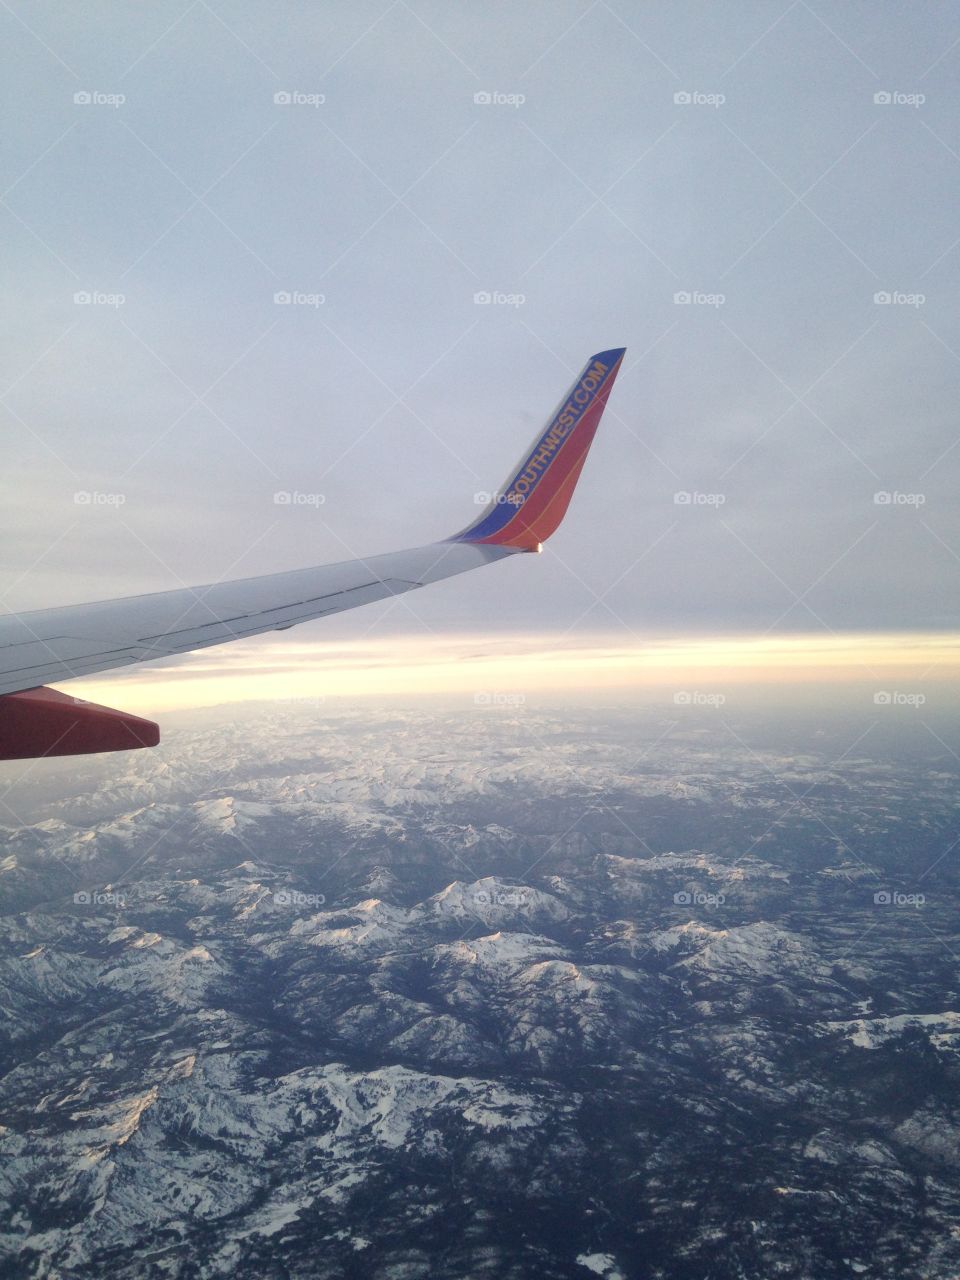 Flying over mountains. Flying over mountains